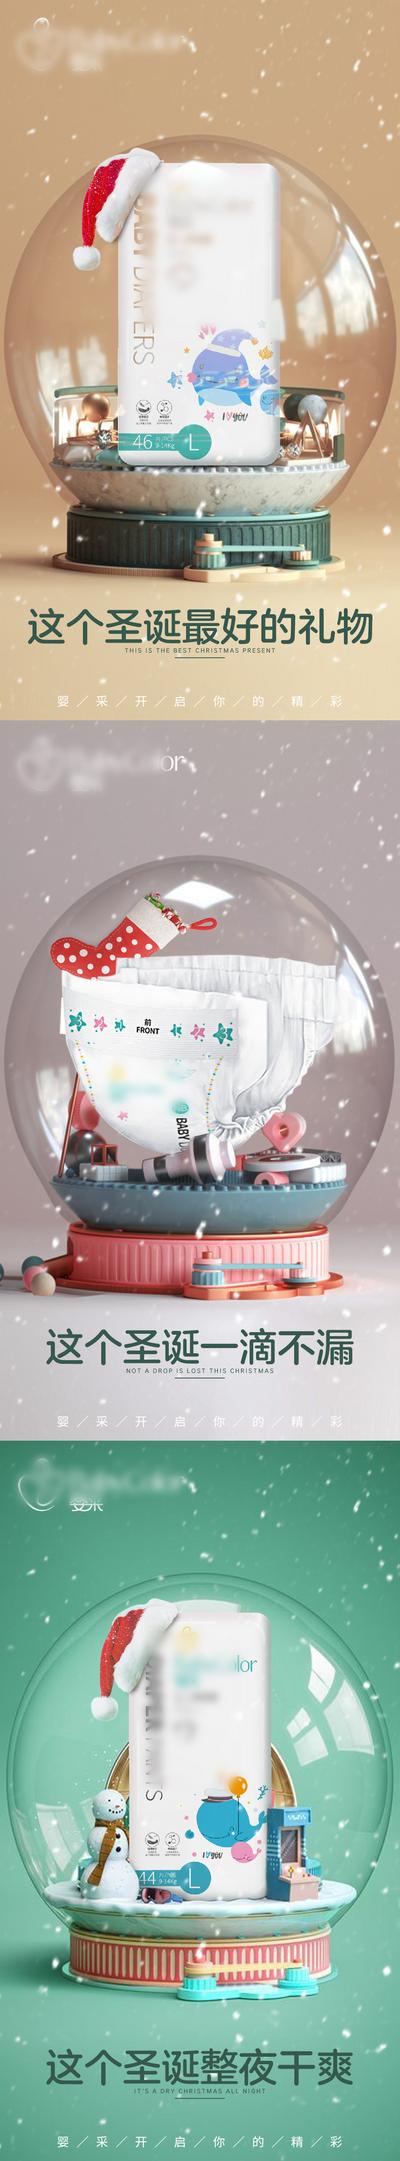 南门网 海报 公历节日 圣诞节 母婴 纸尿裤  产品 水晶球 系列